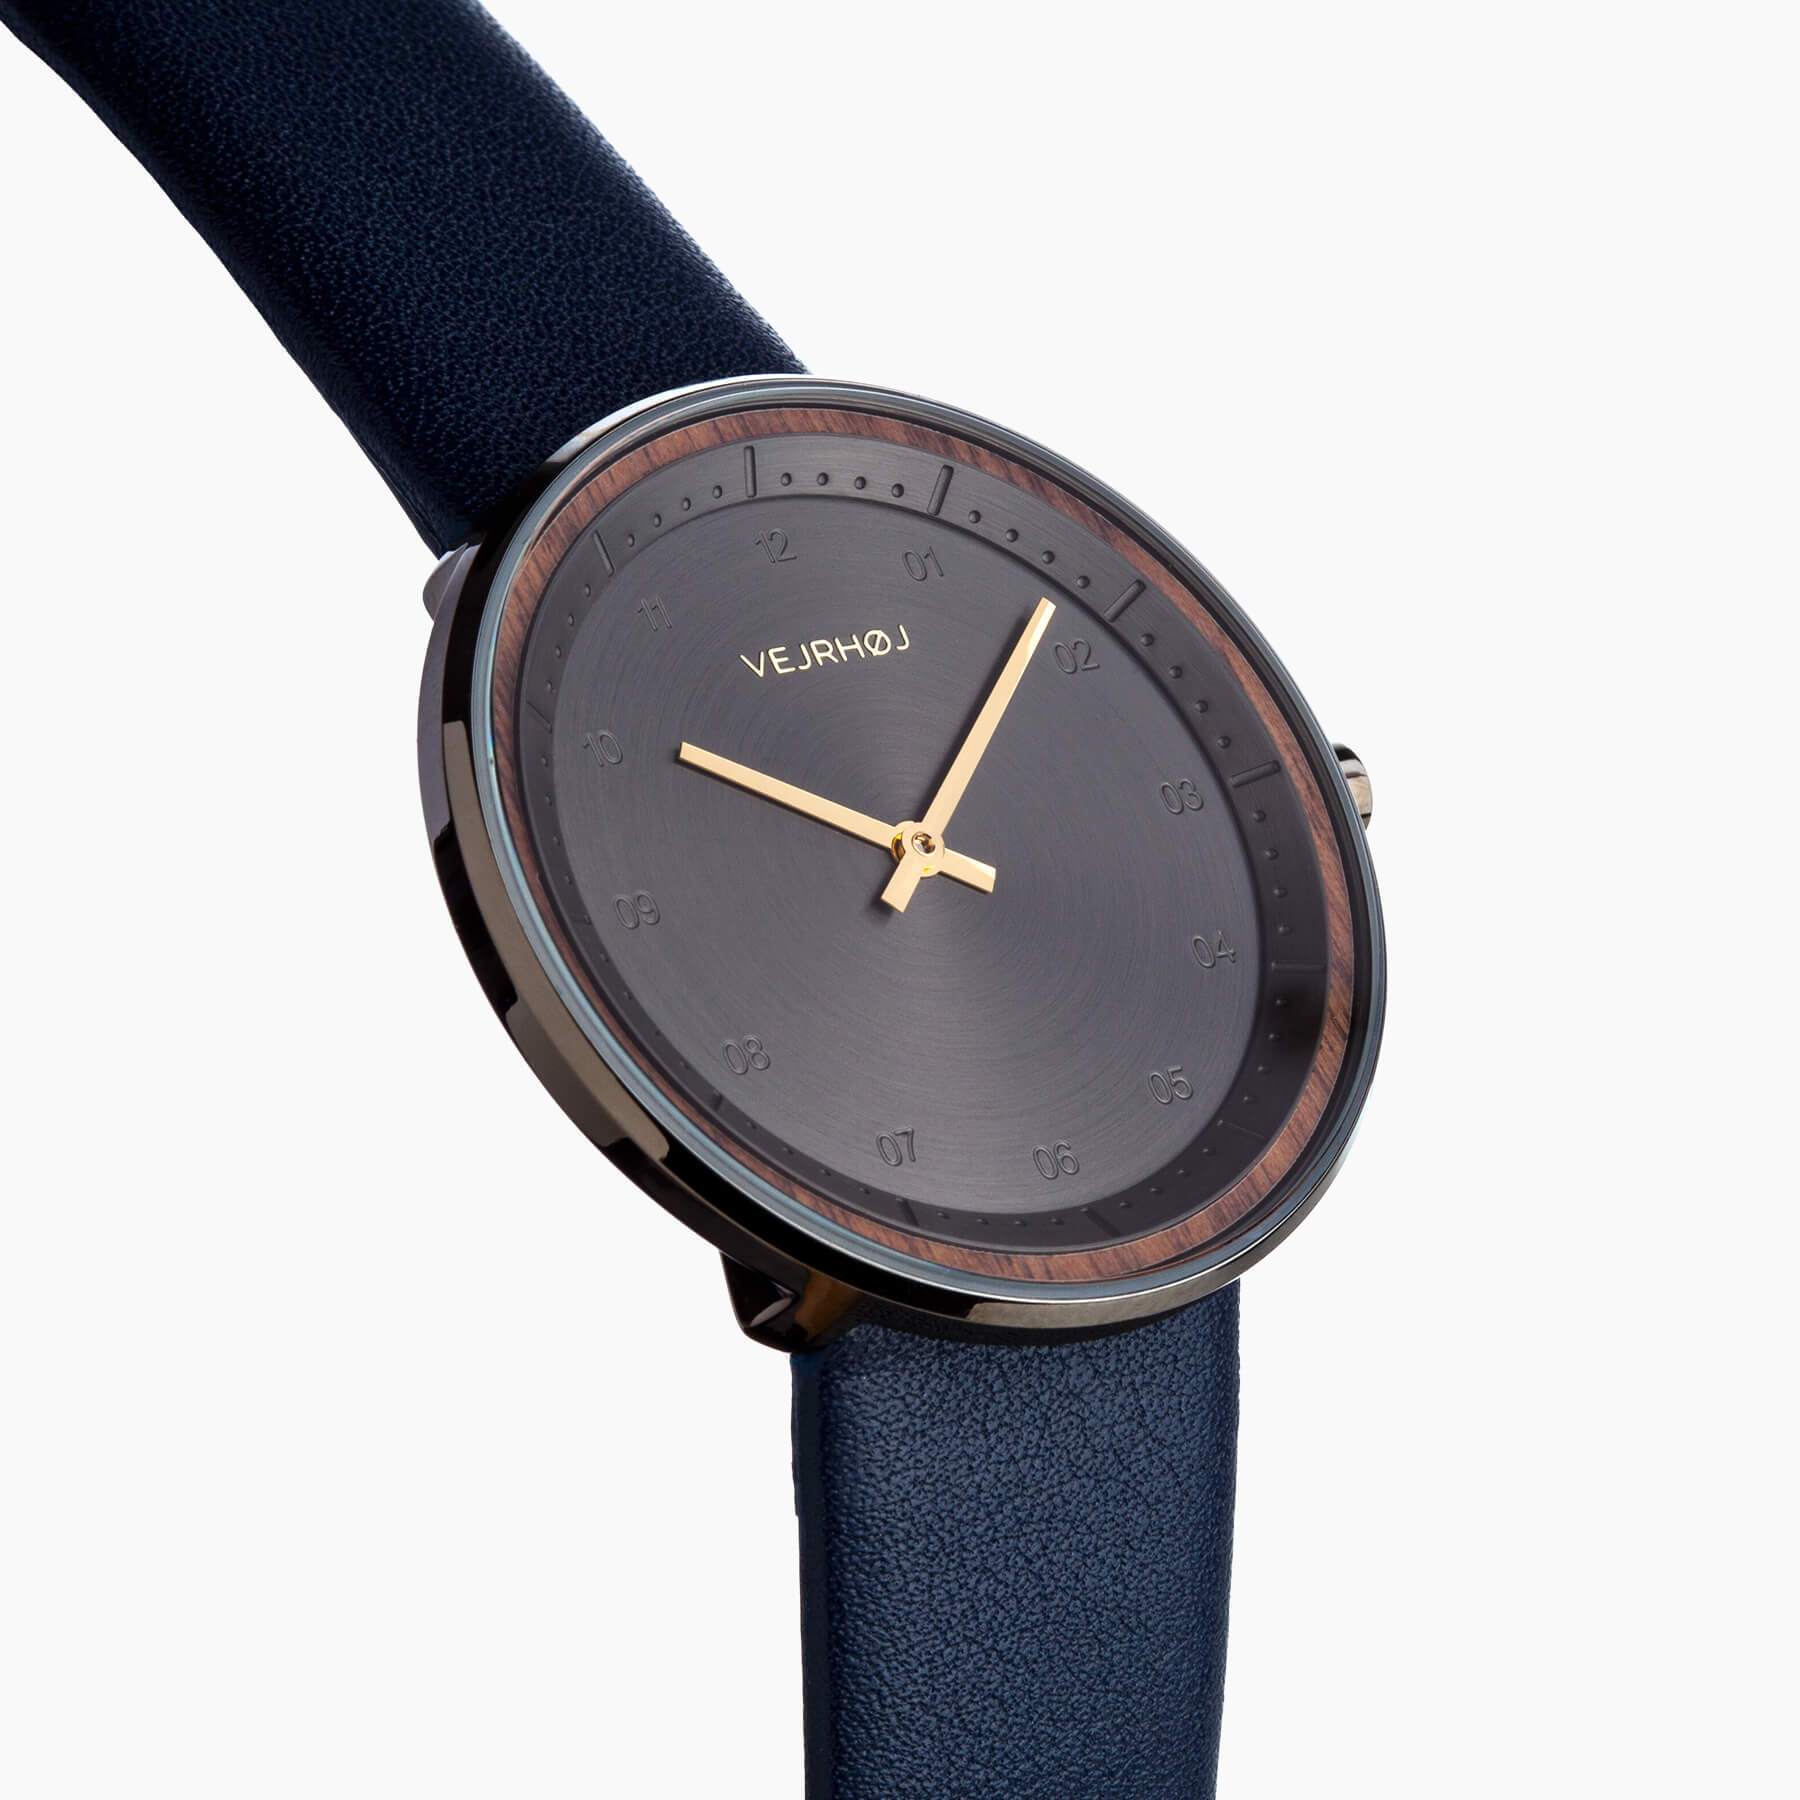 ゴールドの針が輝くVEJRHØJ(ヴェアホイ)の黒の腕時計 Petite | BLACK & GOLD | midnight blue